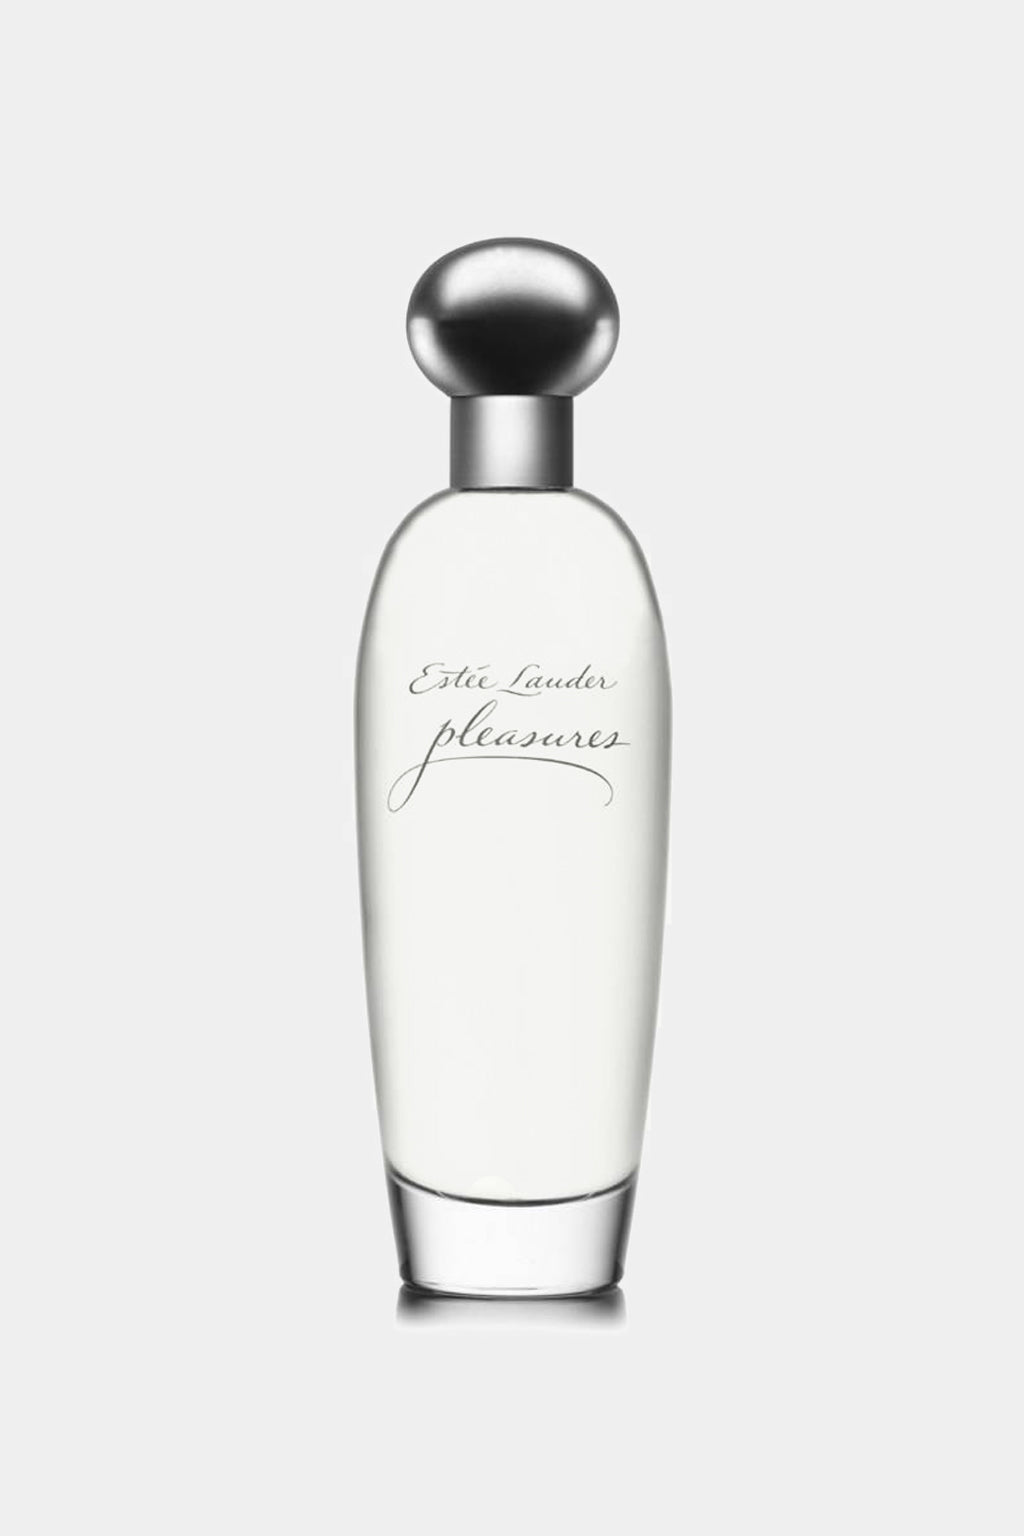 Estee Lauder - Pleasures Eau de Parfum